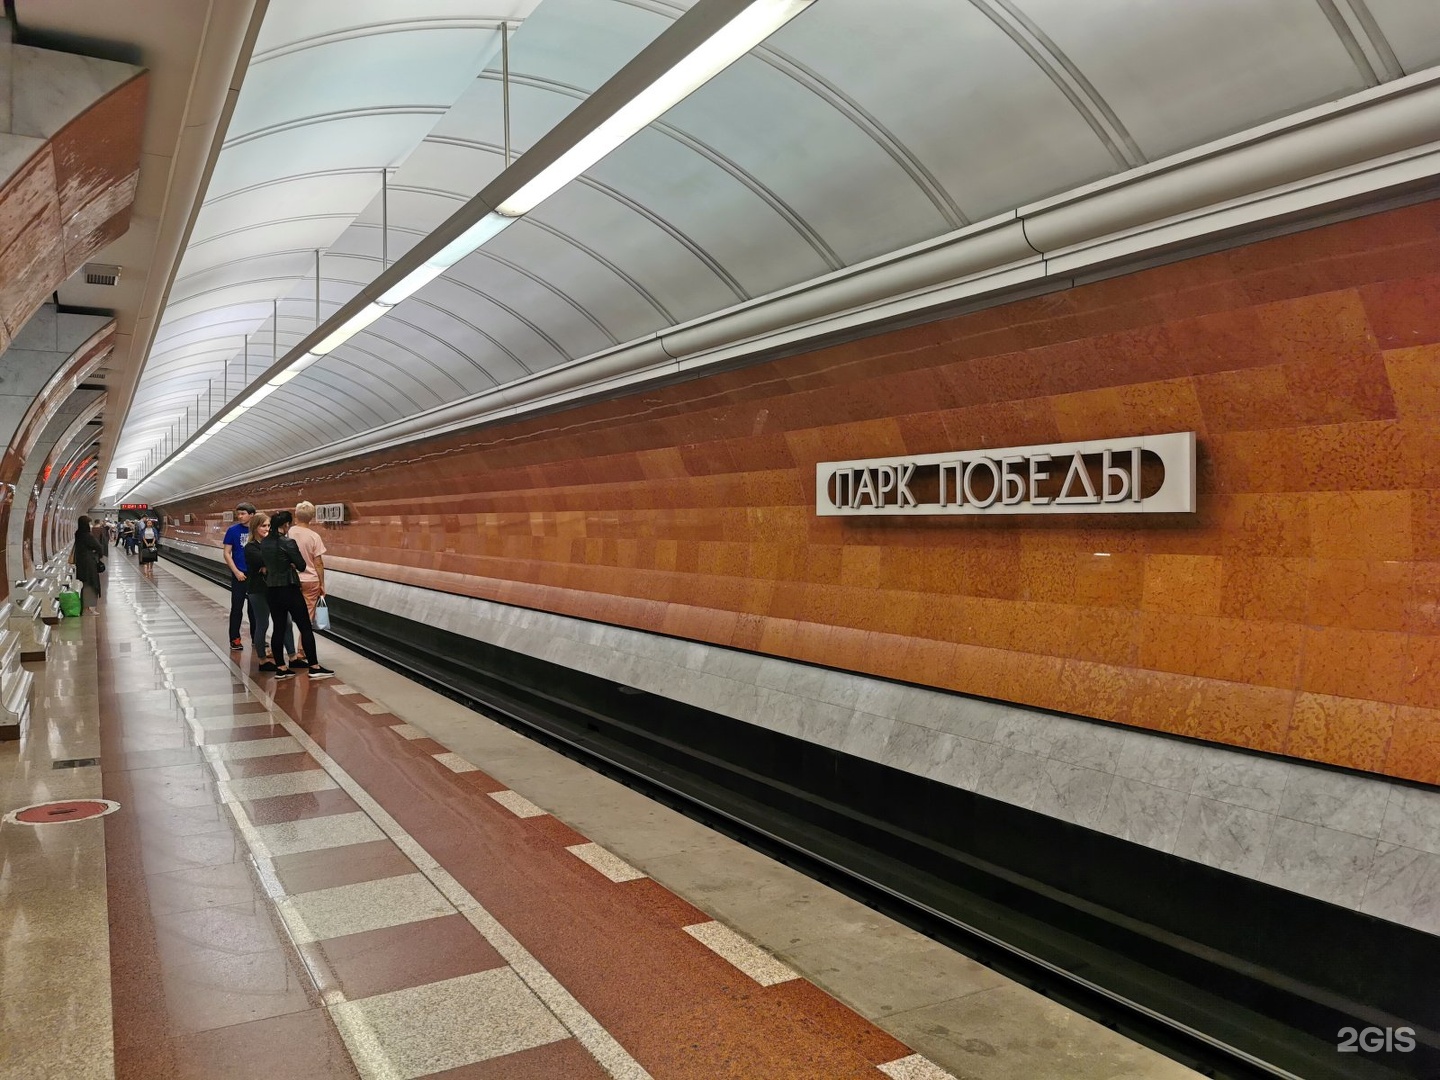 арбатско покровская линия в метро